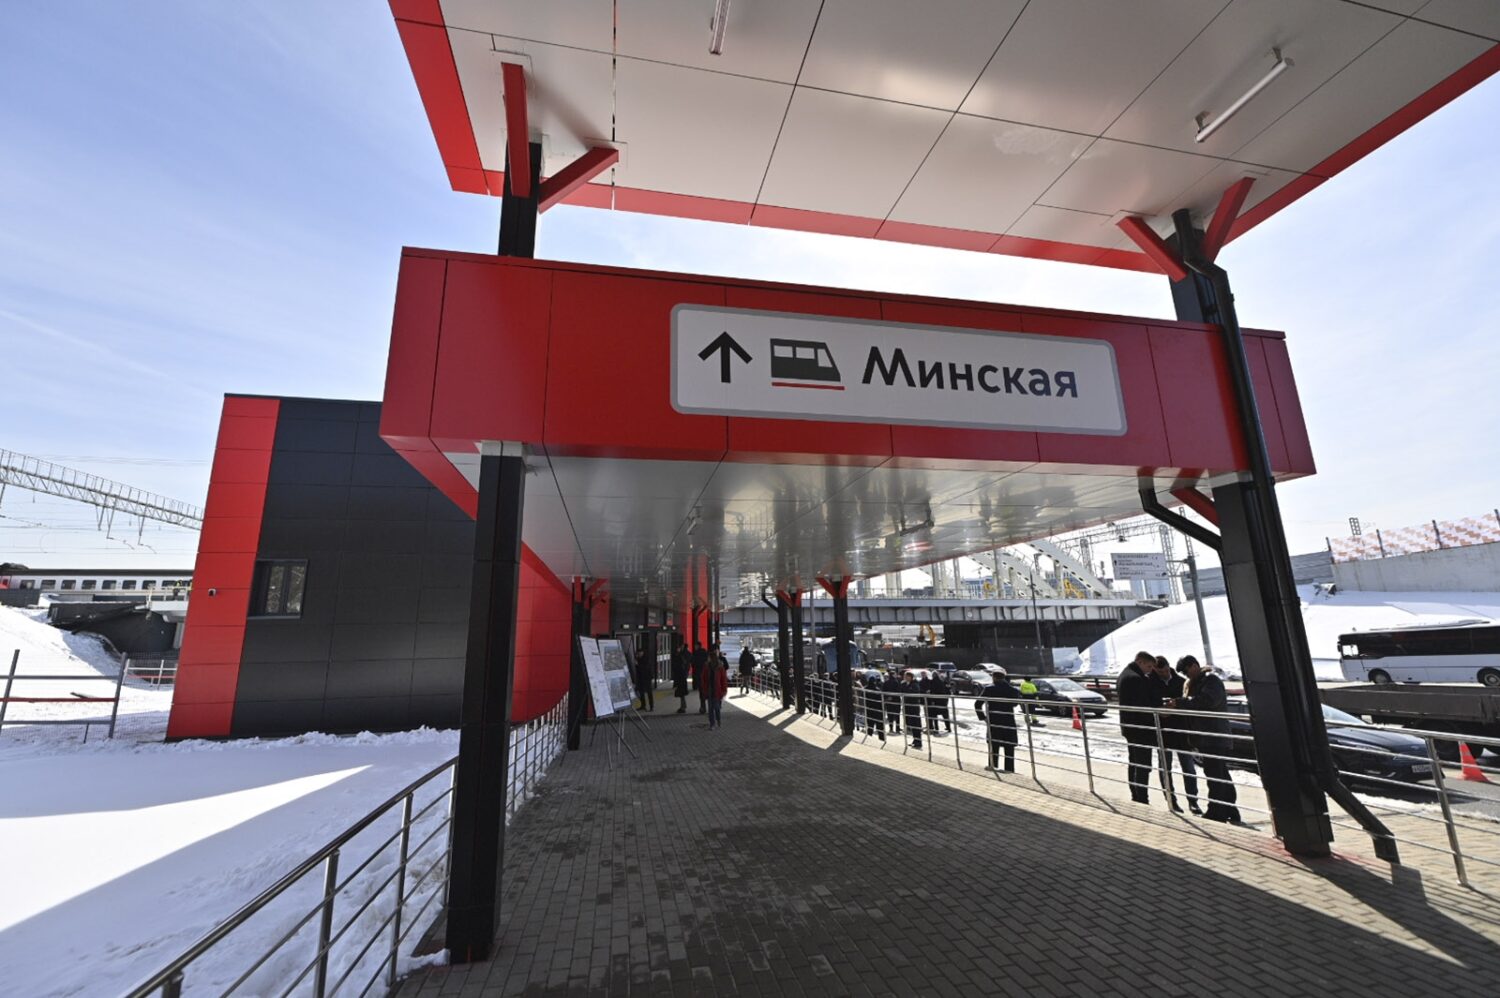 Станция "Минская" открылась в Москве на Киевском направлении МЖД